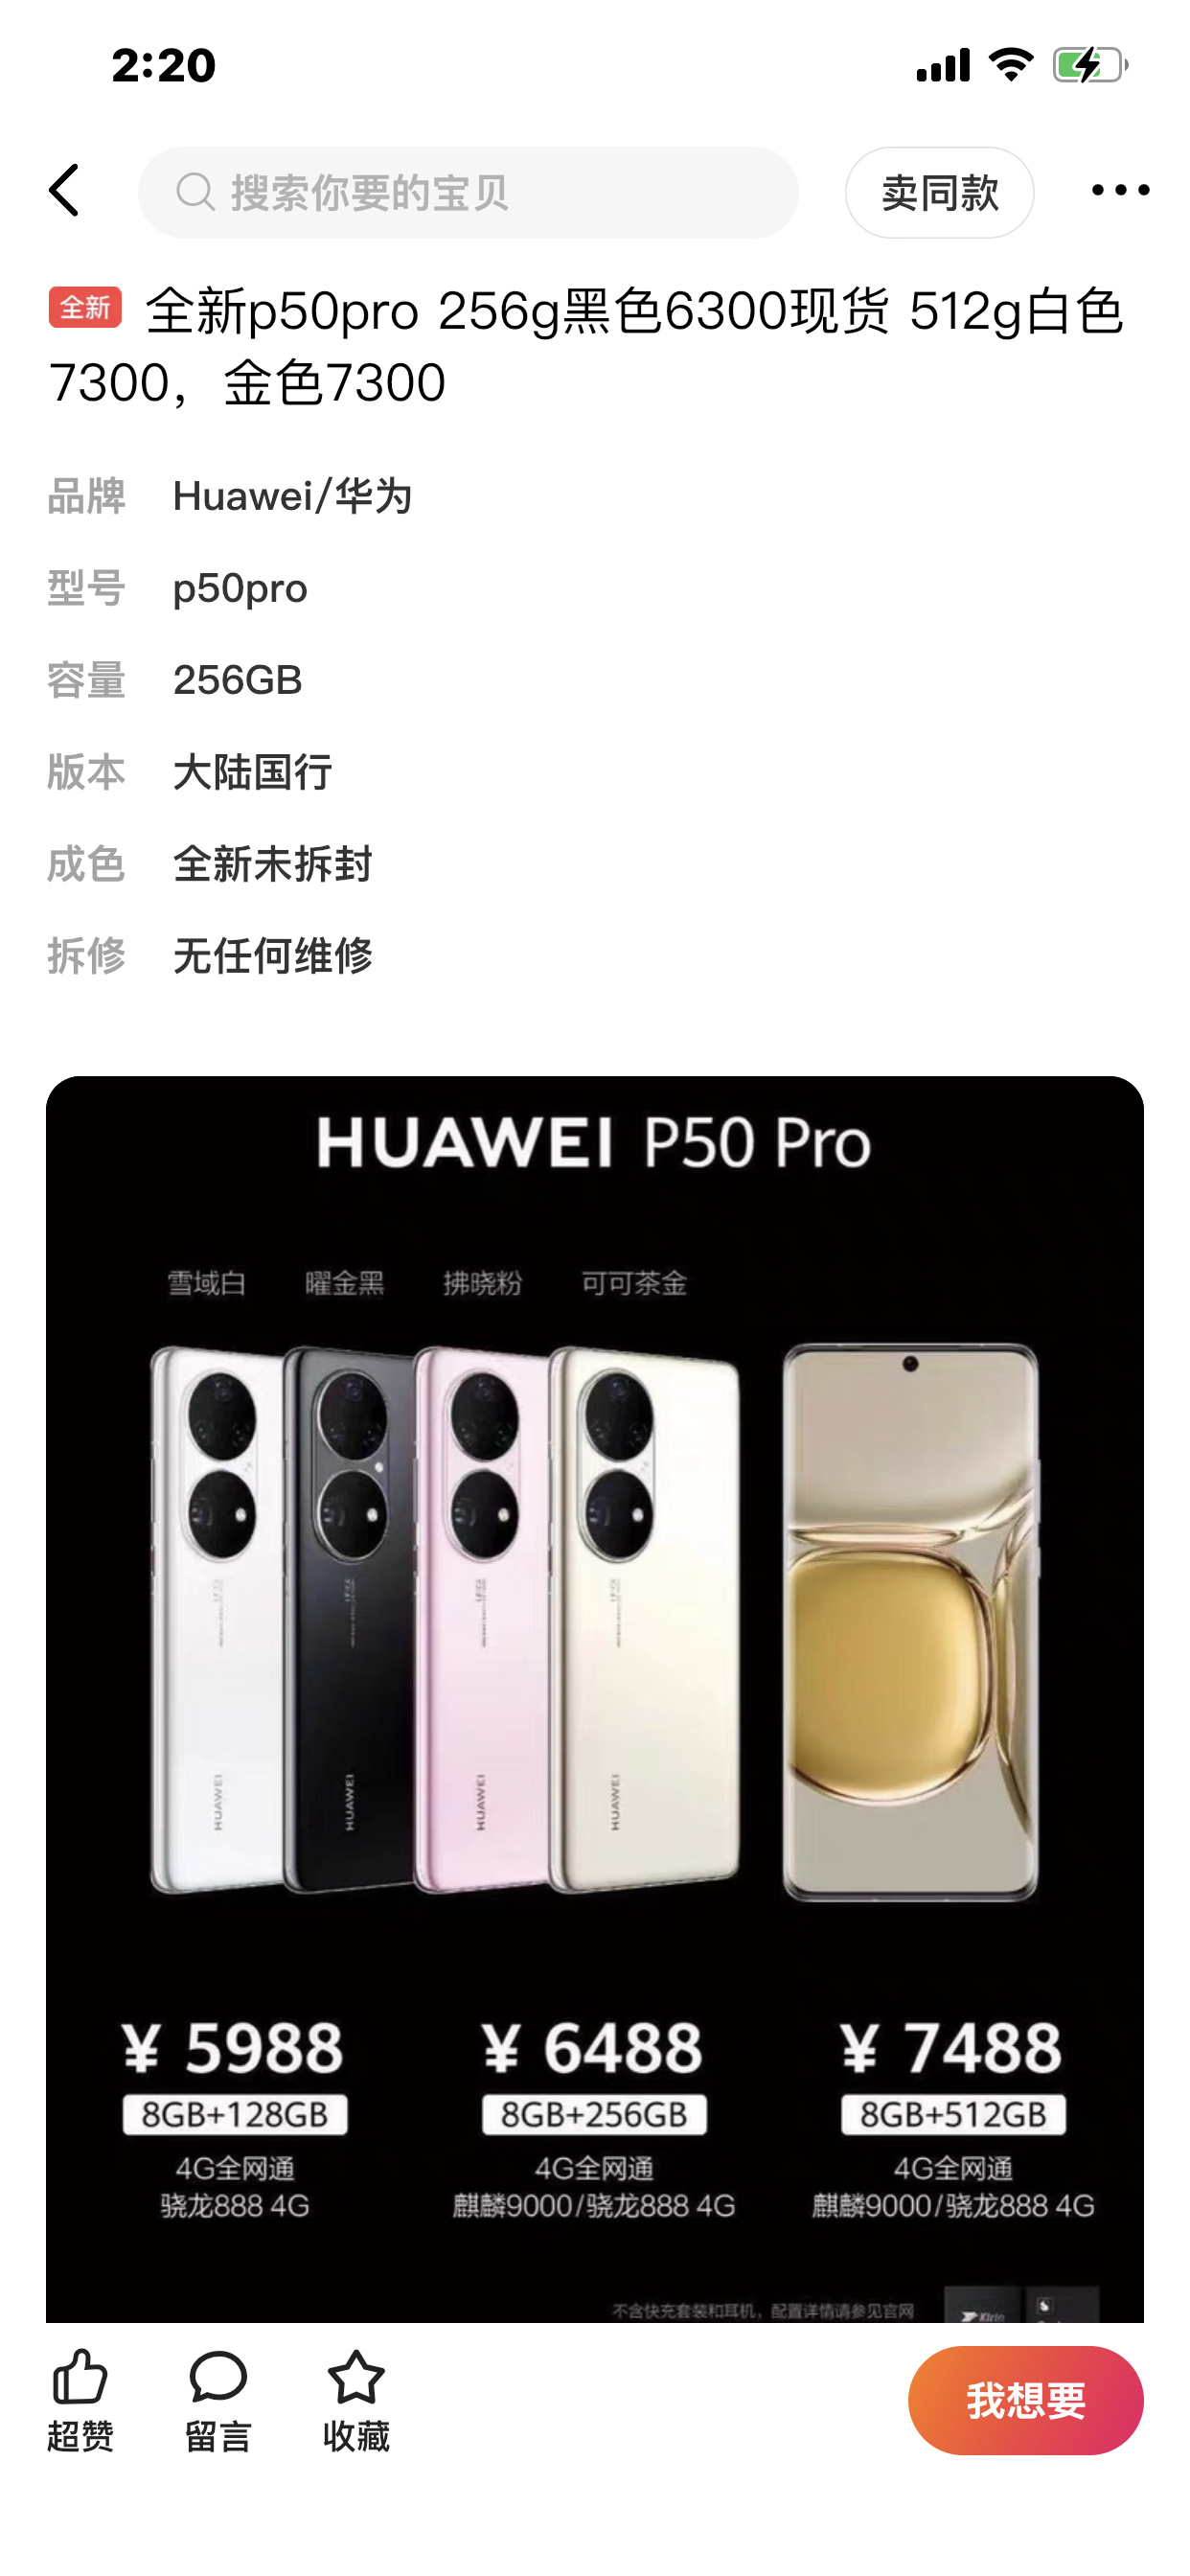 华为p50pro跌破发行价,二手翻新手机开卖,华为到底怎么了?